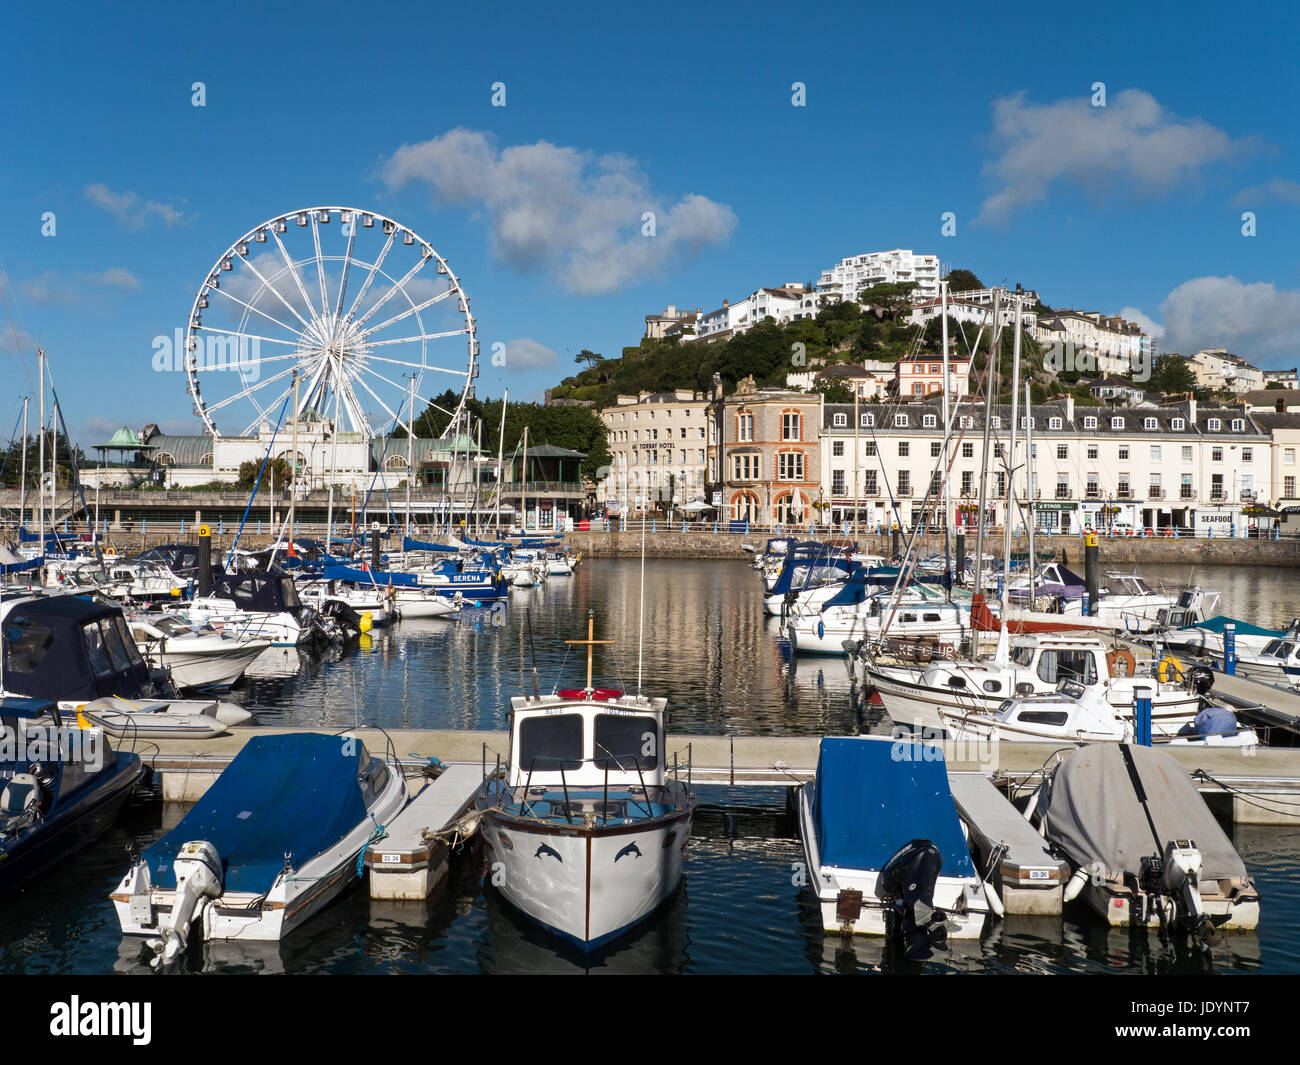 Die englische Riviera Resort von Torquay mit Riesenrad und attraktive Waterfront, Torquay, Torbay, Devon, England, Großbritannien Stockfoto